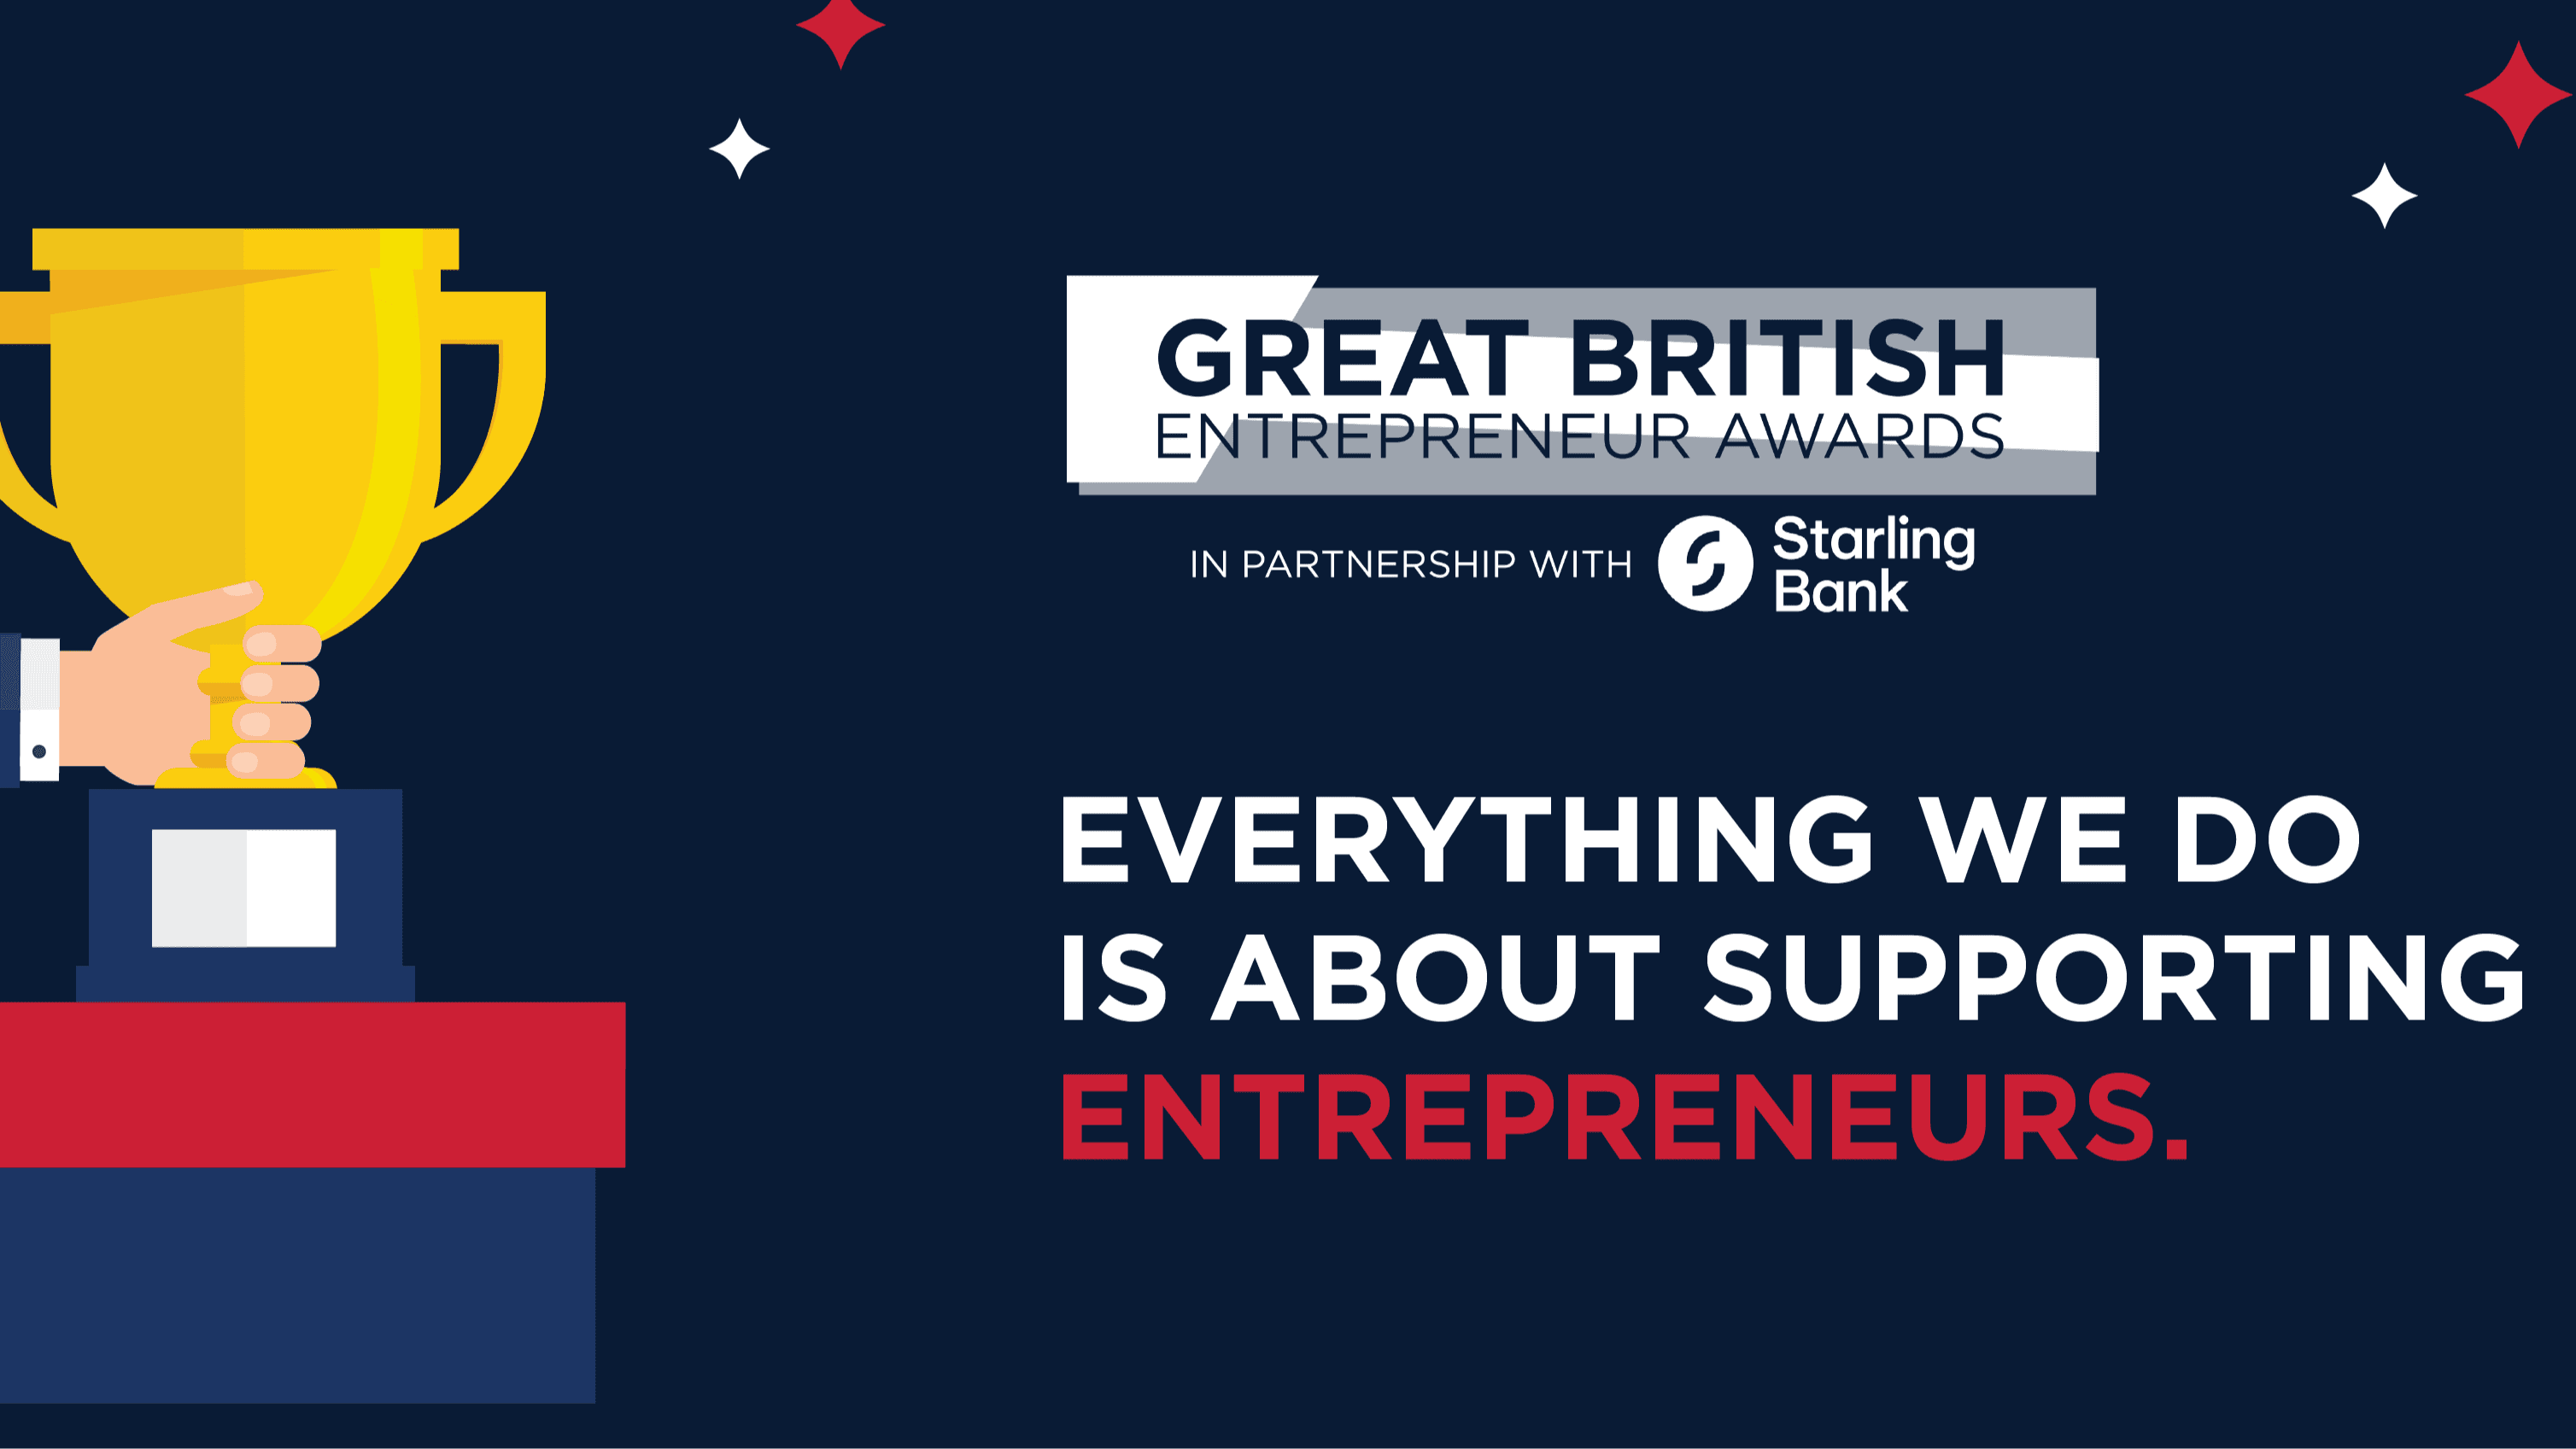 grapic of Great British Entrepreneur awards branding